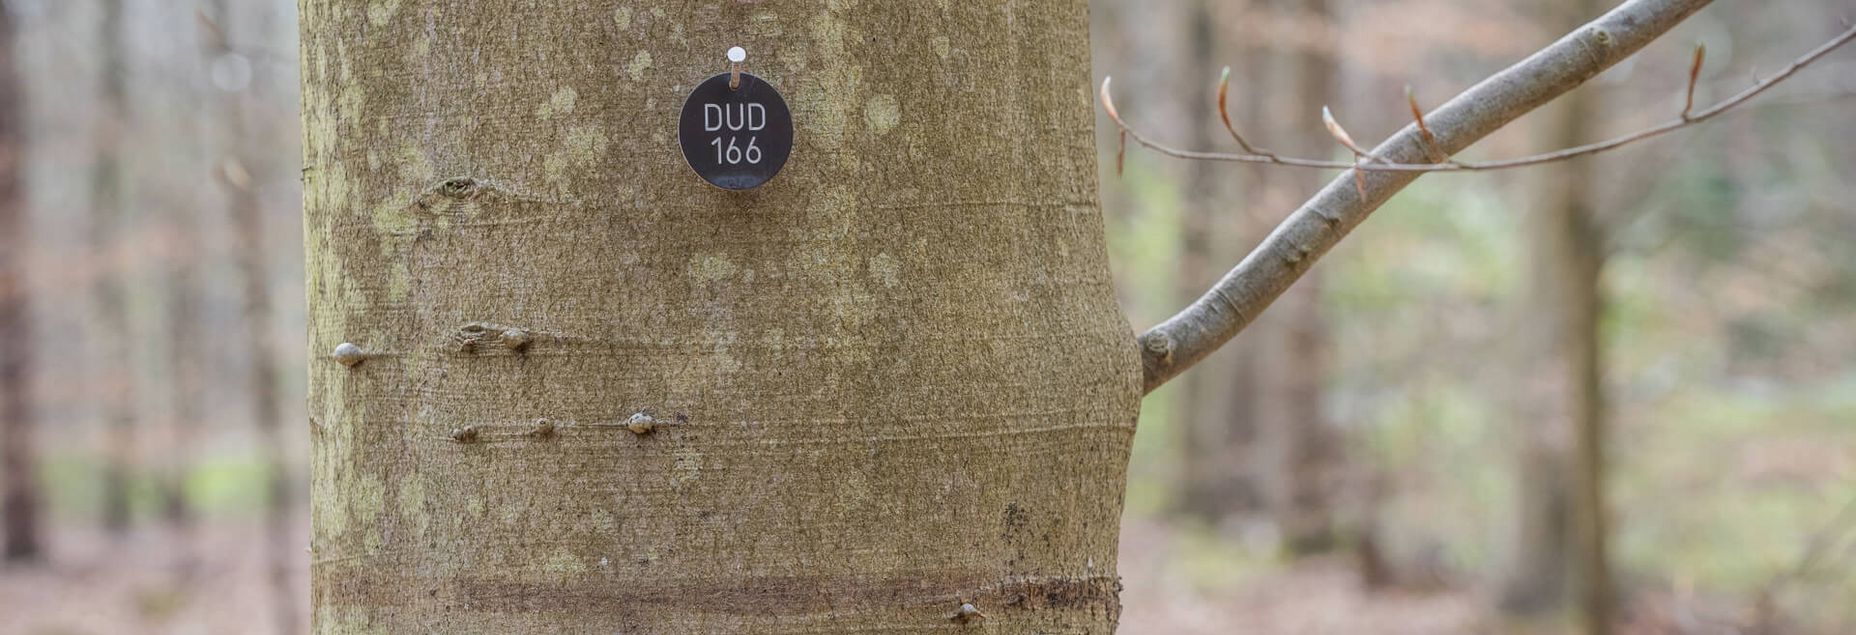 Baum DUD 166 - Plakette